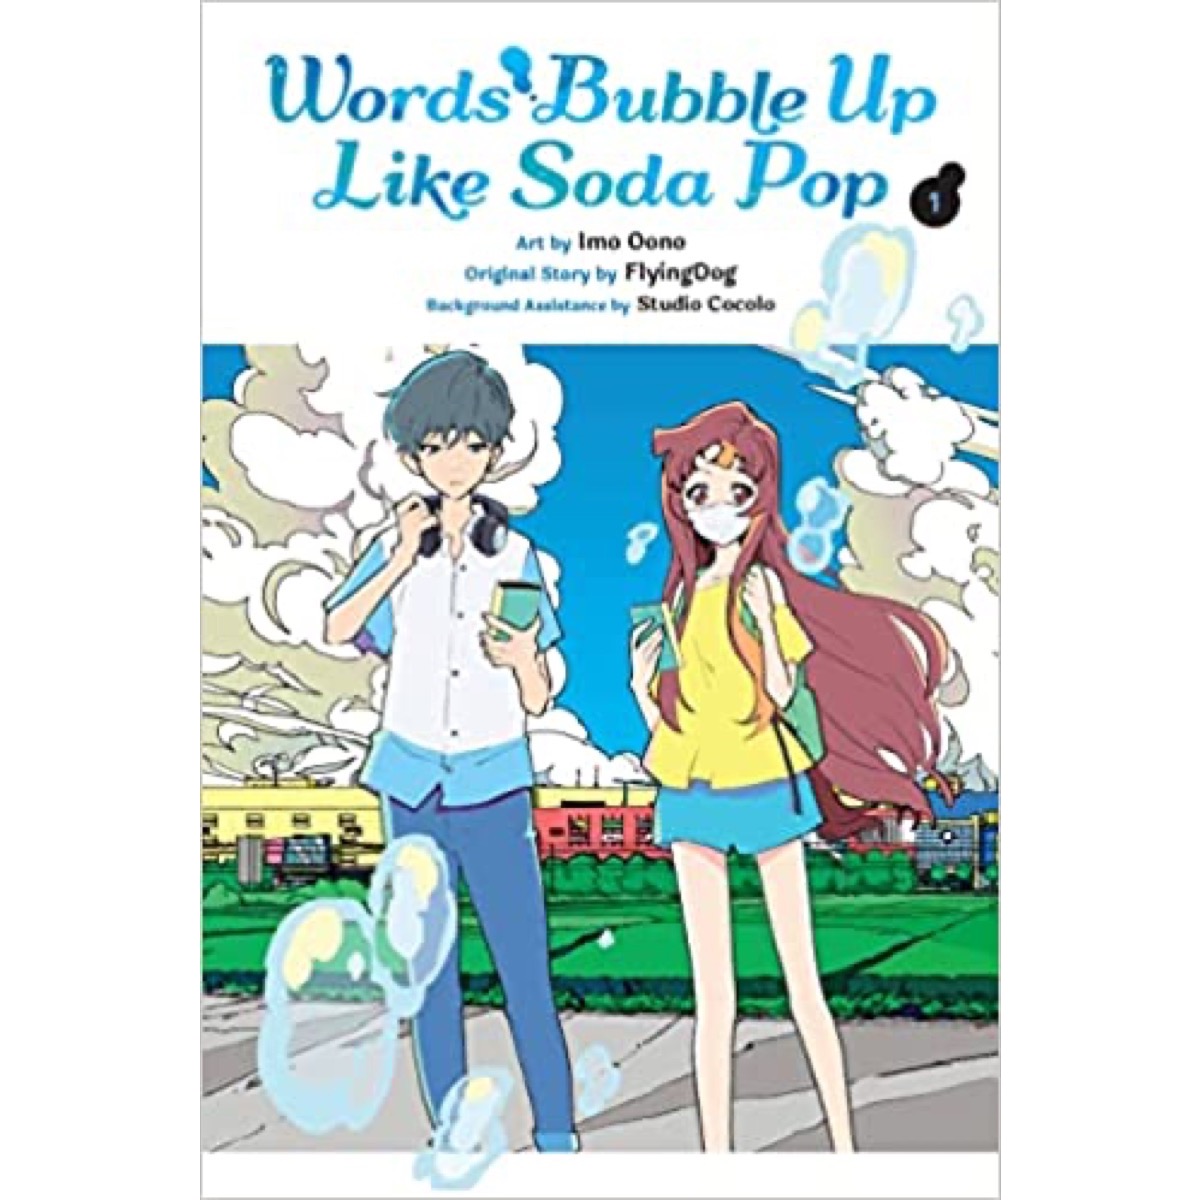 Words Bubble Up Like Soda Pop | Words Bubble Up Like Soda Pop Wiki | Fandom